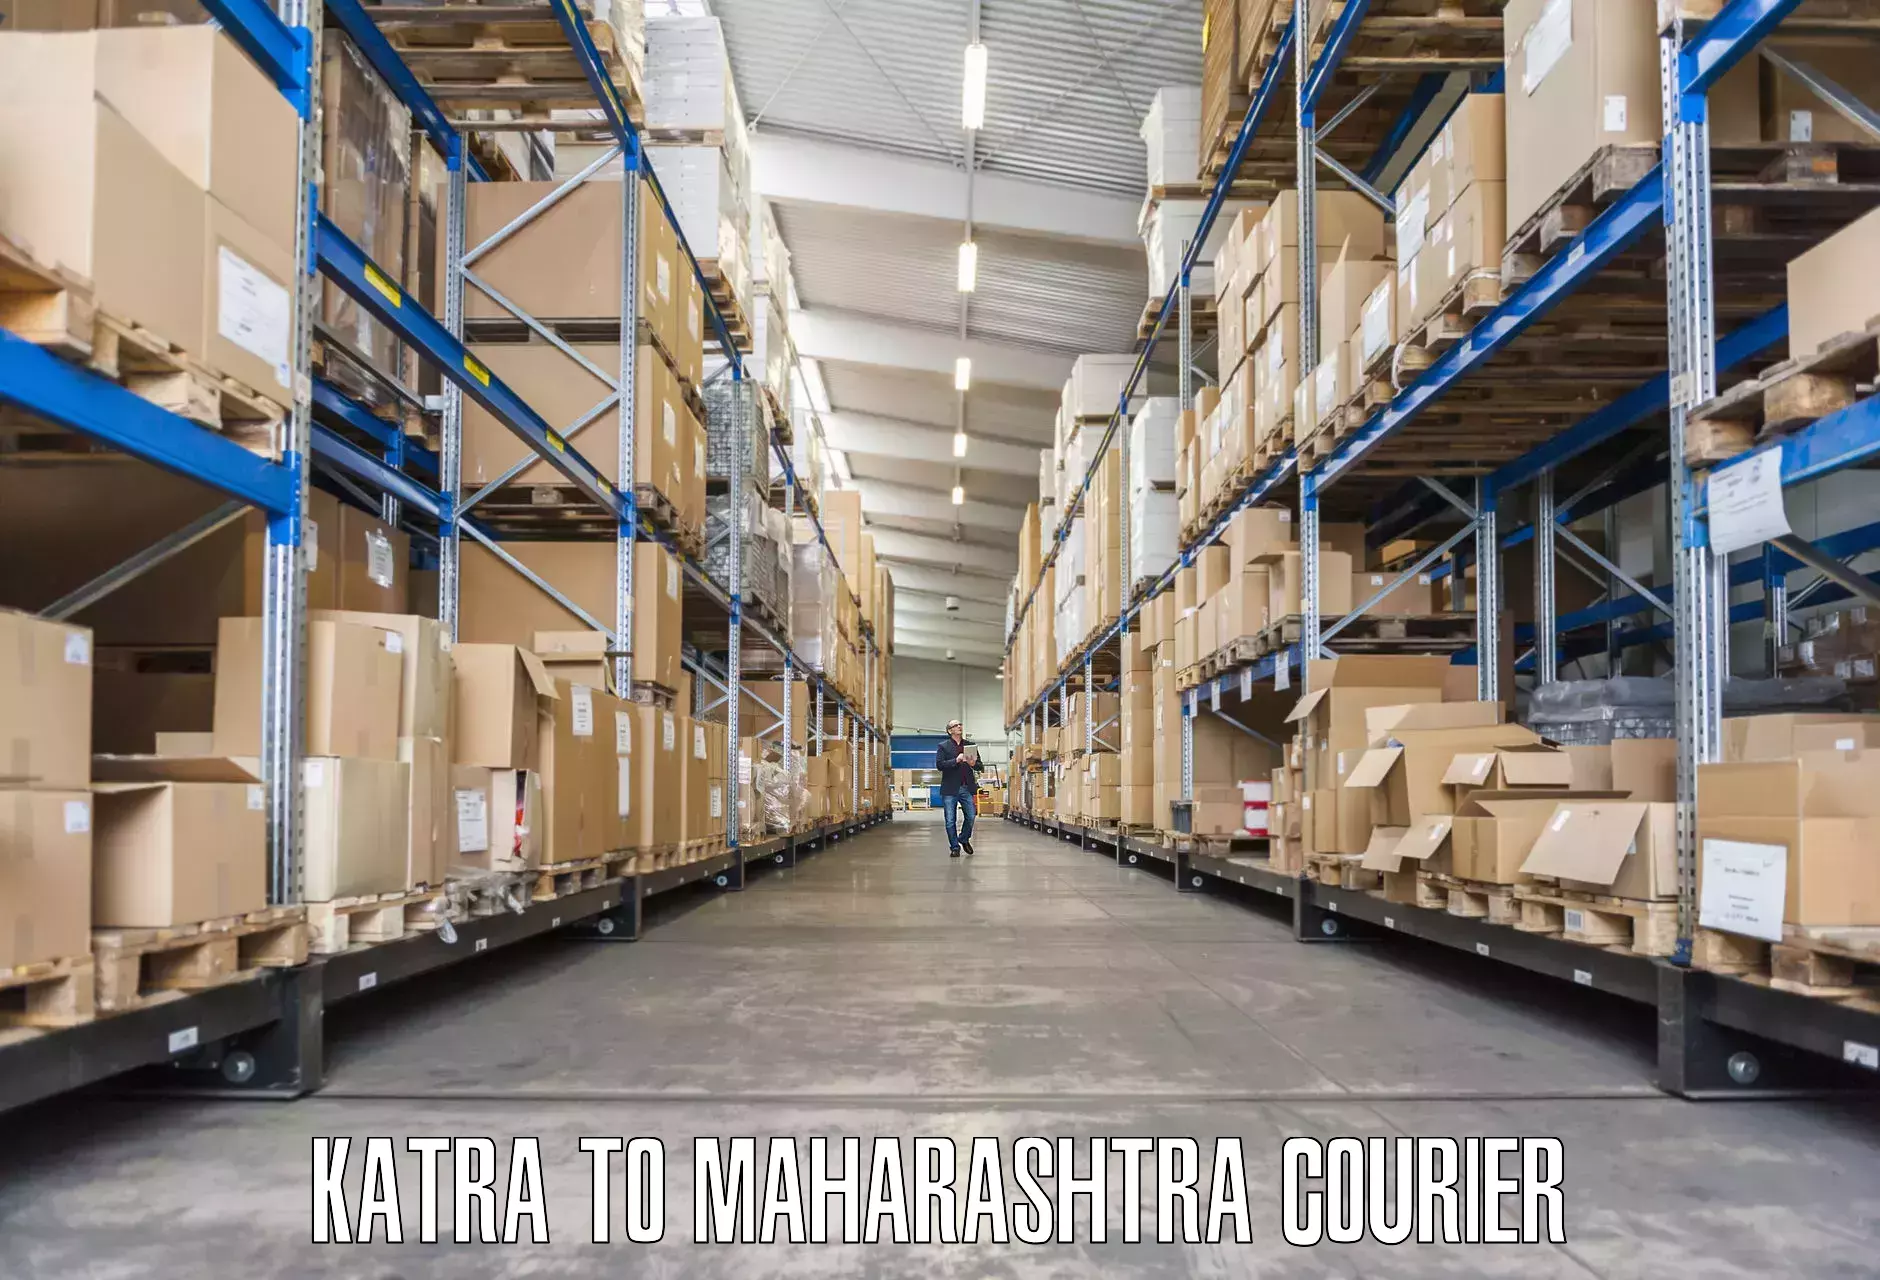 Expert household relocation in Katra to Maharashtra